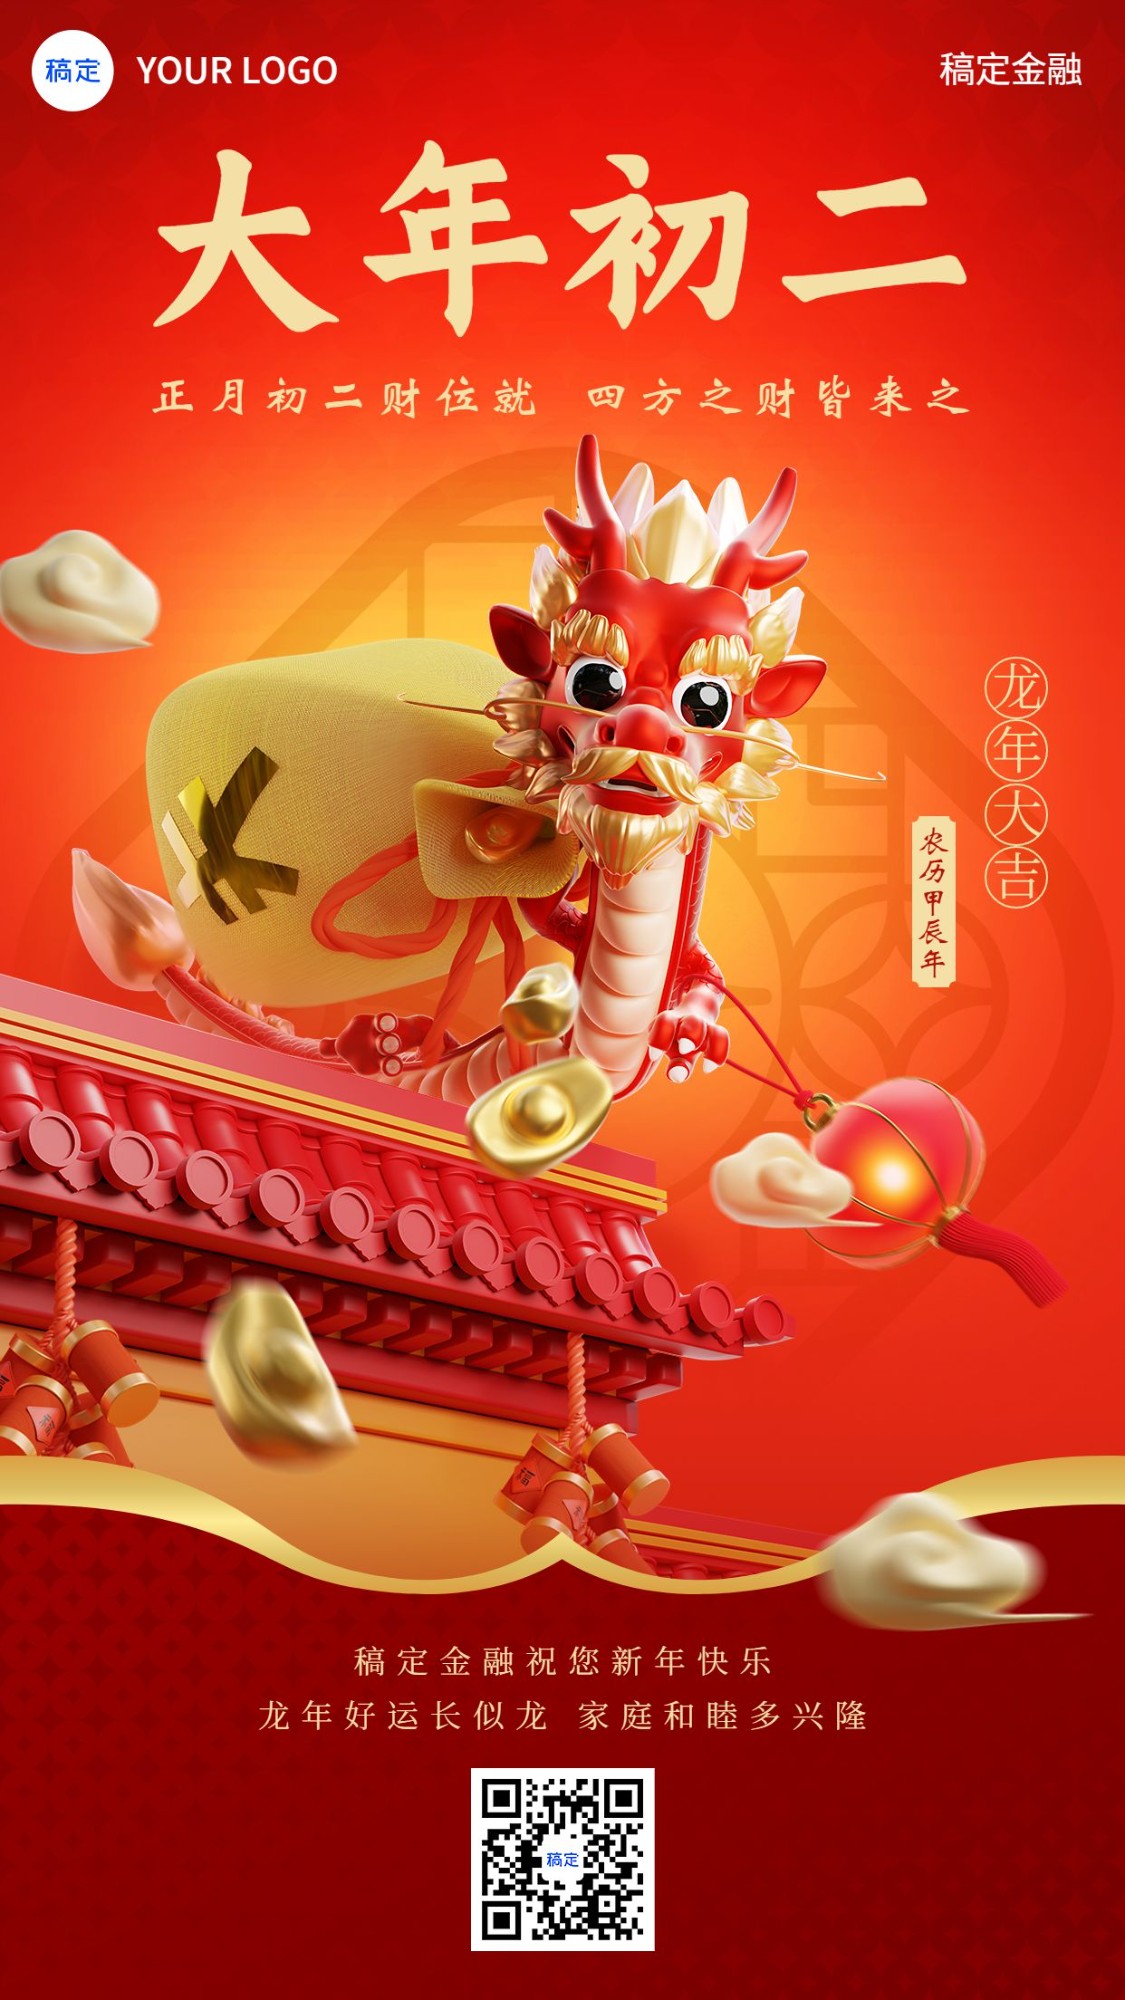 春节正月初二龙年金融保险节日祝福创意3D喜庆手机海报套系